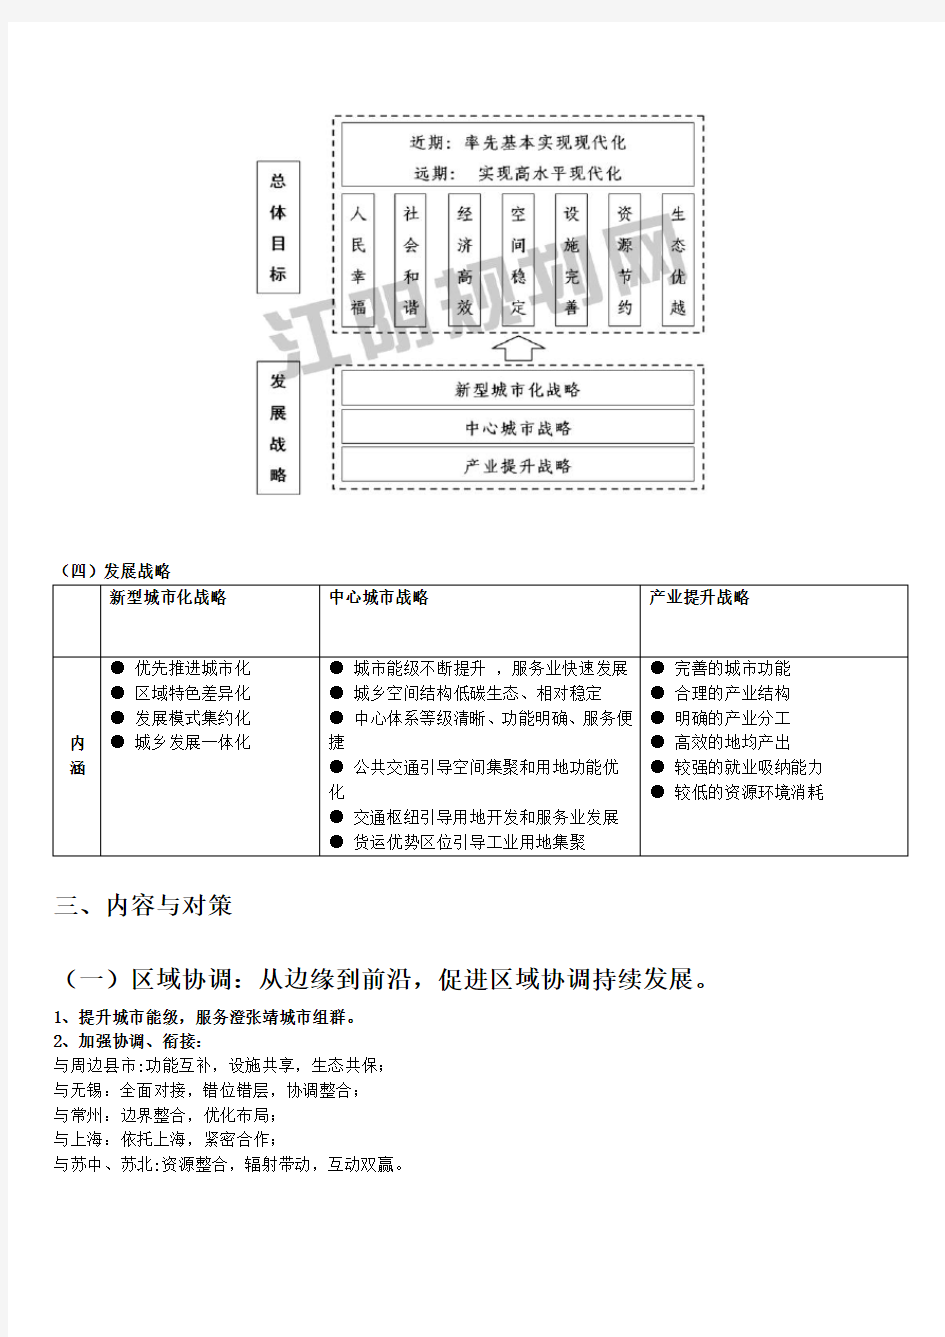 江阴城市总体规划(2011~2030)